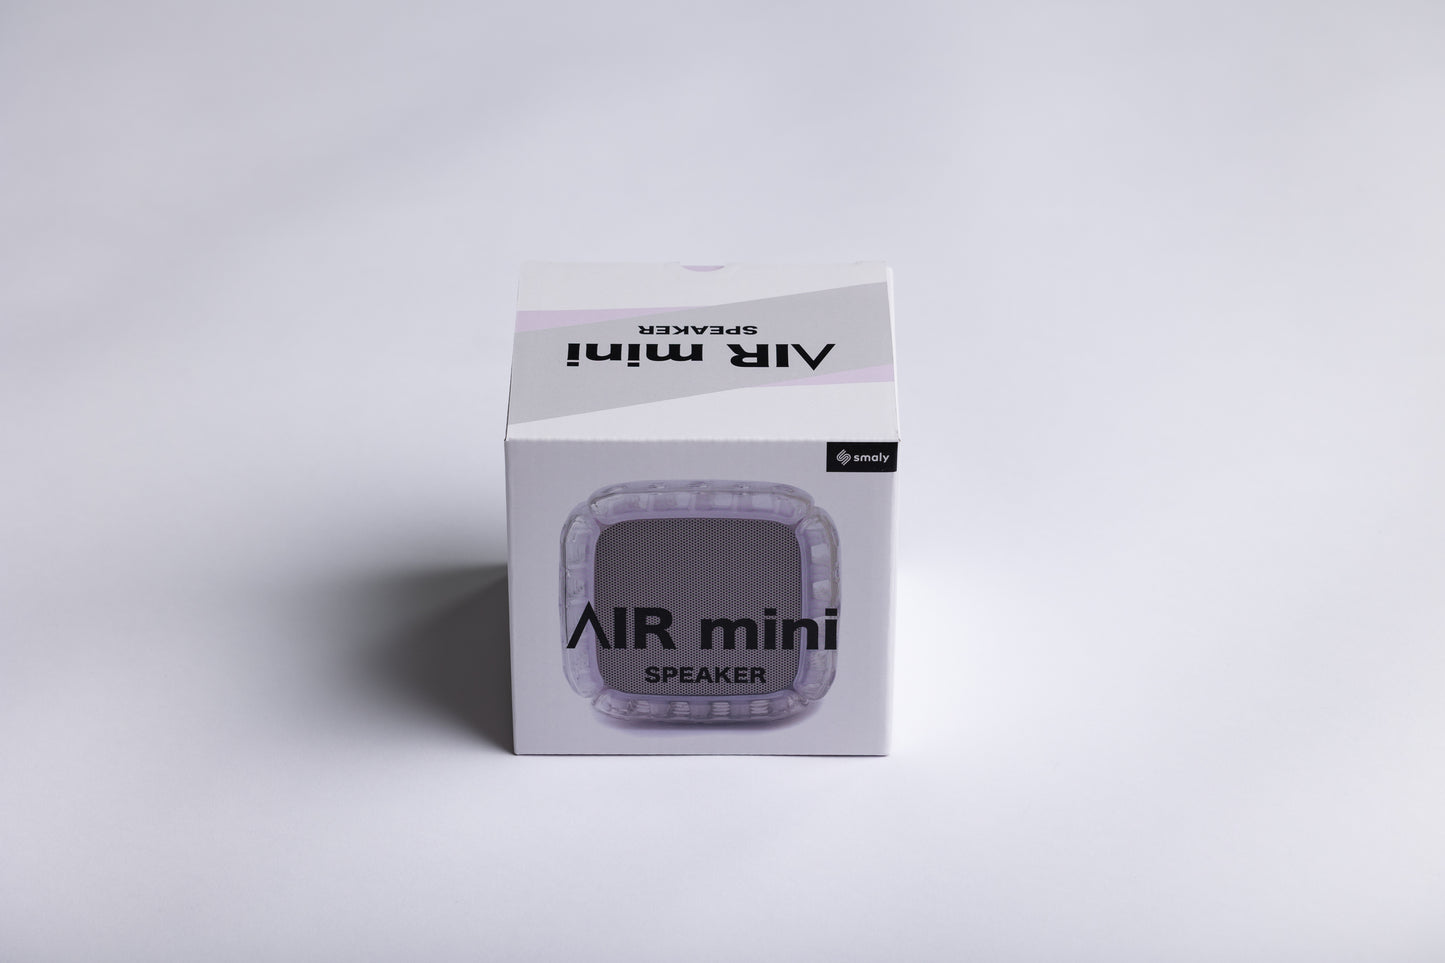 AIR mini SPEAKER